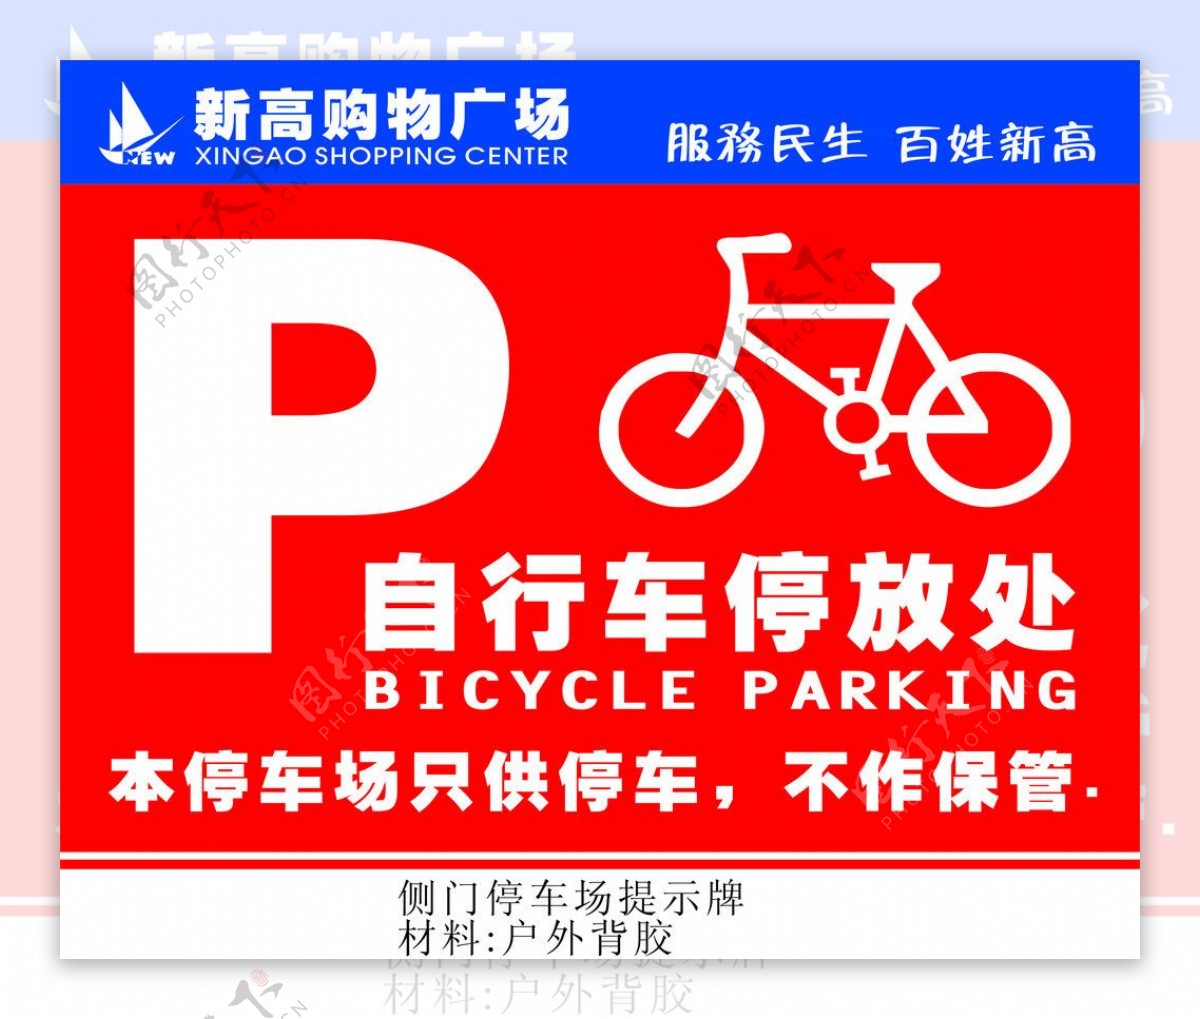 自行车停放区图片